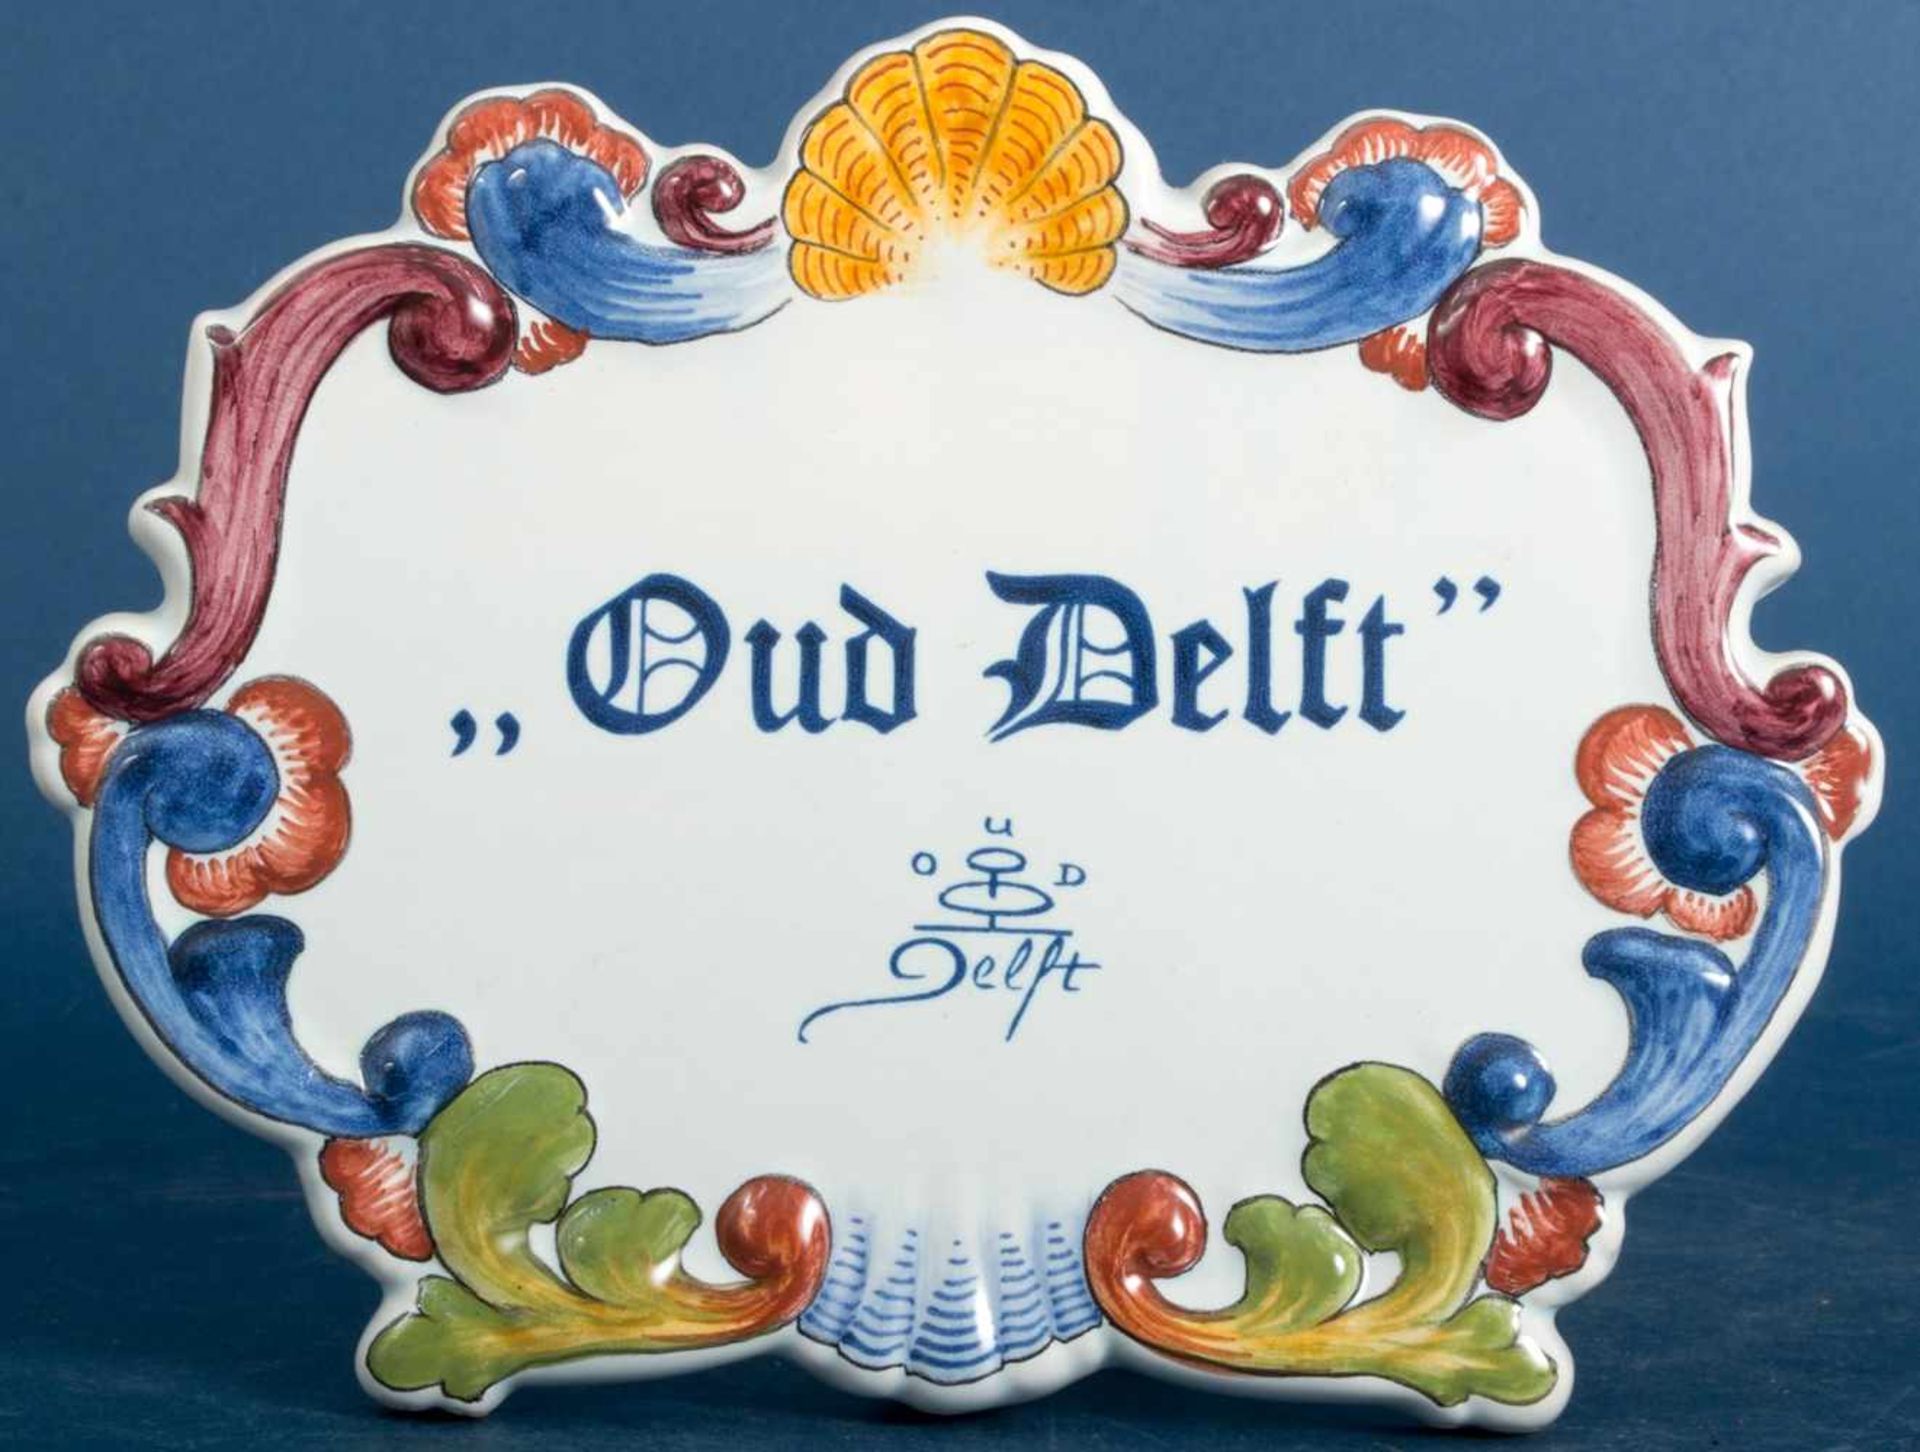 "OUD DELFT" - aufstellbares Händlerschild. Ca. 17 x 22 cm. Sehr schöner Erhaltungszustand.- - -20.00